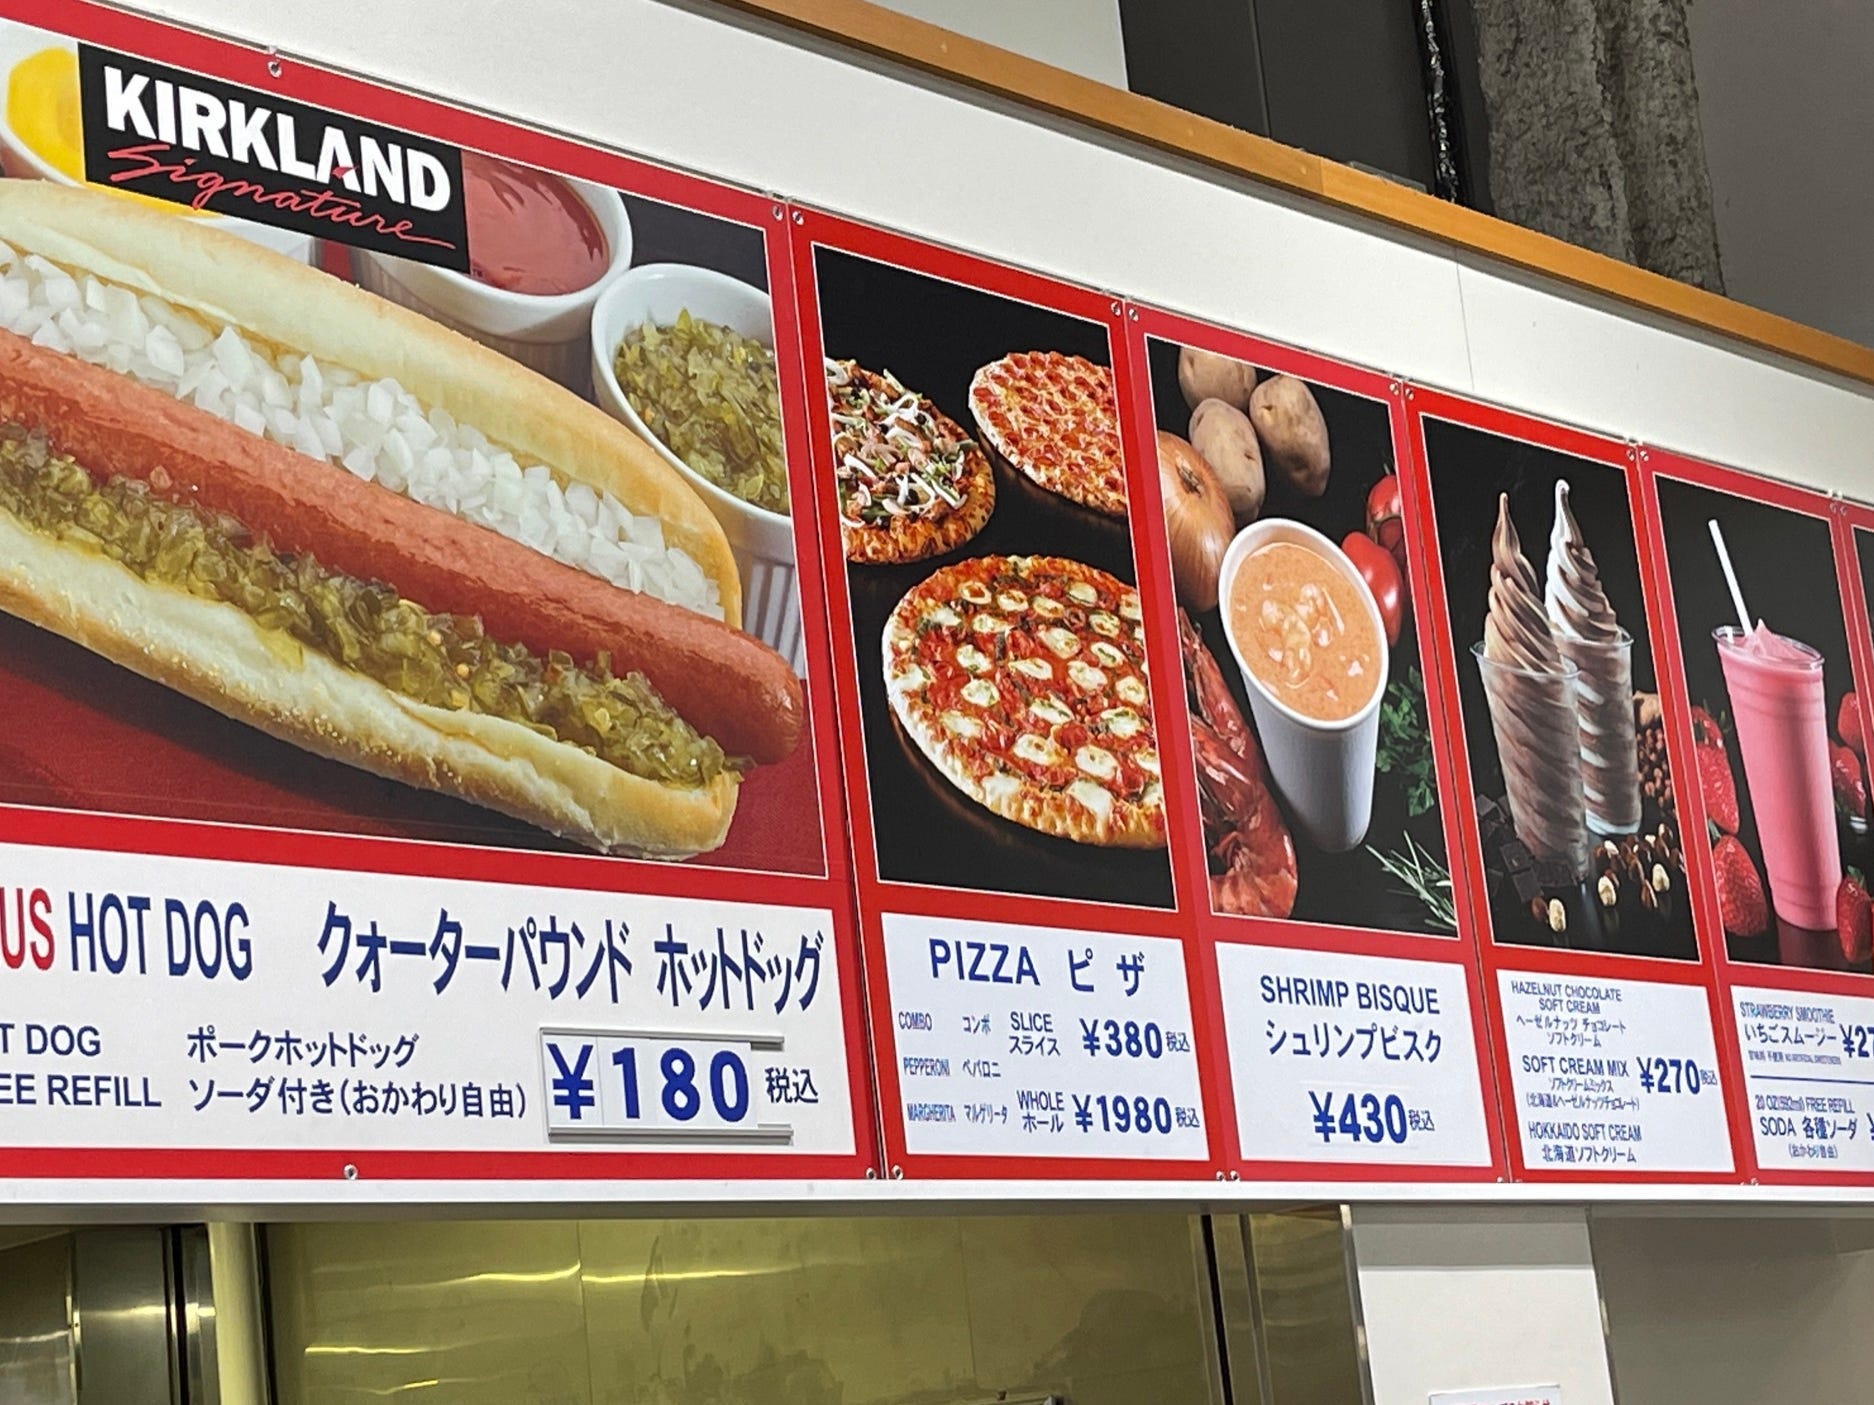 Der Hotdog kostet technisch gesehen immer noch 1,50 US-Dollar, wenn man japanische Yen in US-Dollar umrechnet, und man hat die üblichen Grundnahrungsmittel Hotdog, Pizza, Kaffee, Eis und Smoothies – alles normale Dinge, die man in den USA sieht.